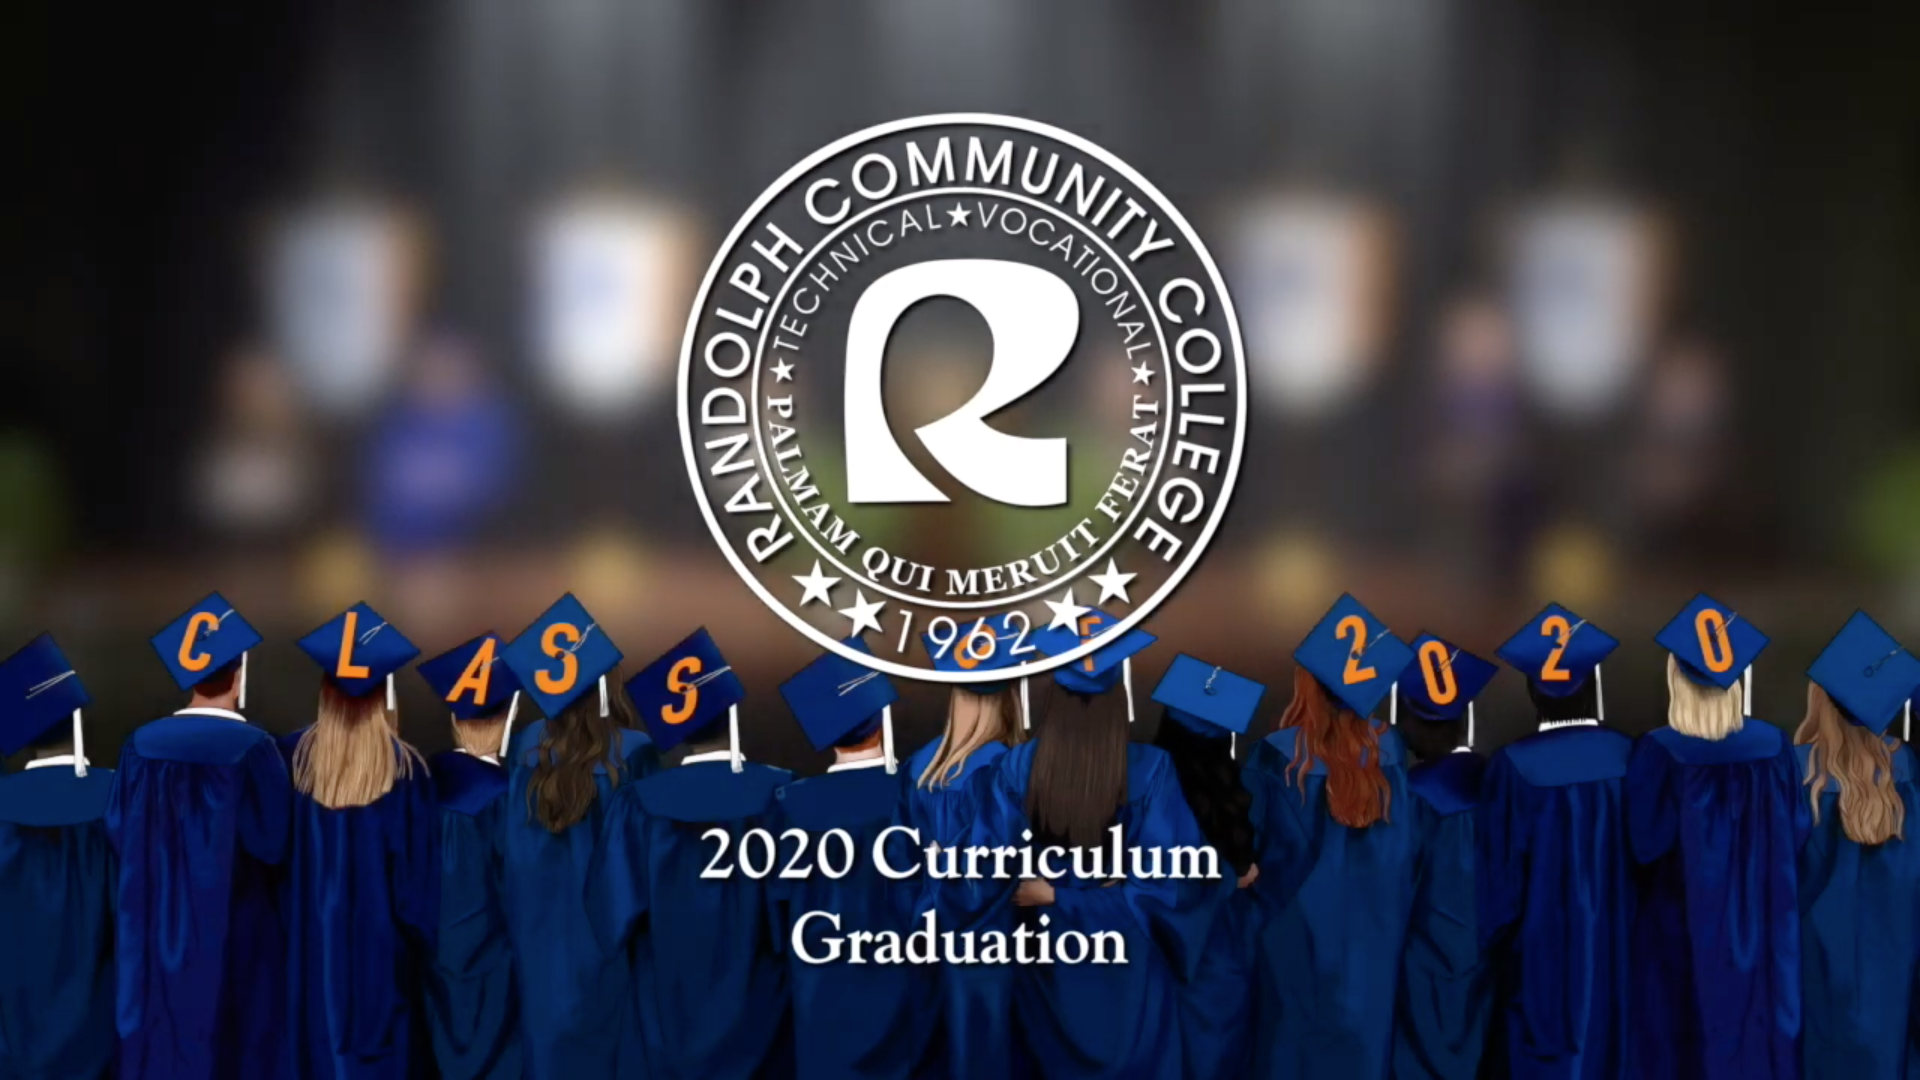 RCC 2020 Curriculum Graduation